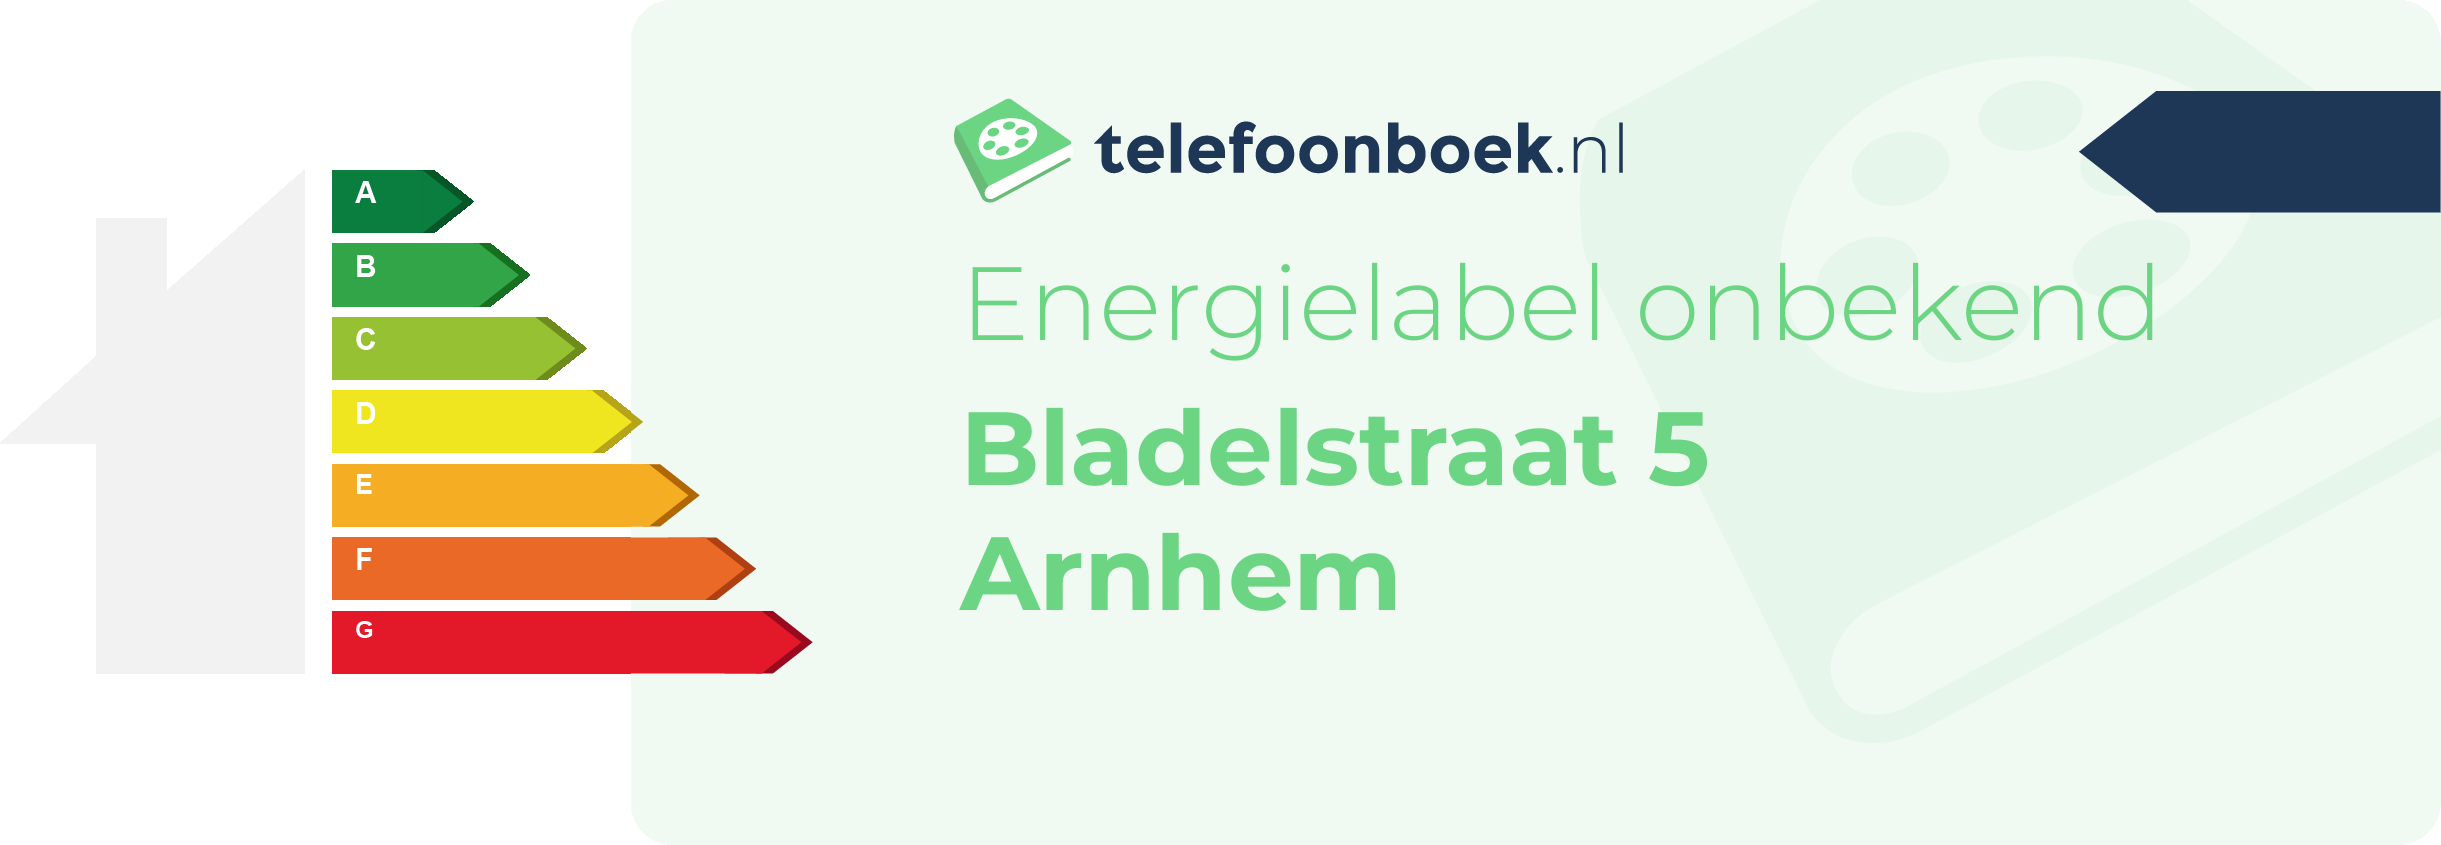 Energielabel Bladelstraat 5 Arnhem